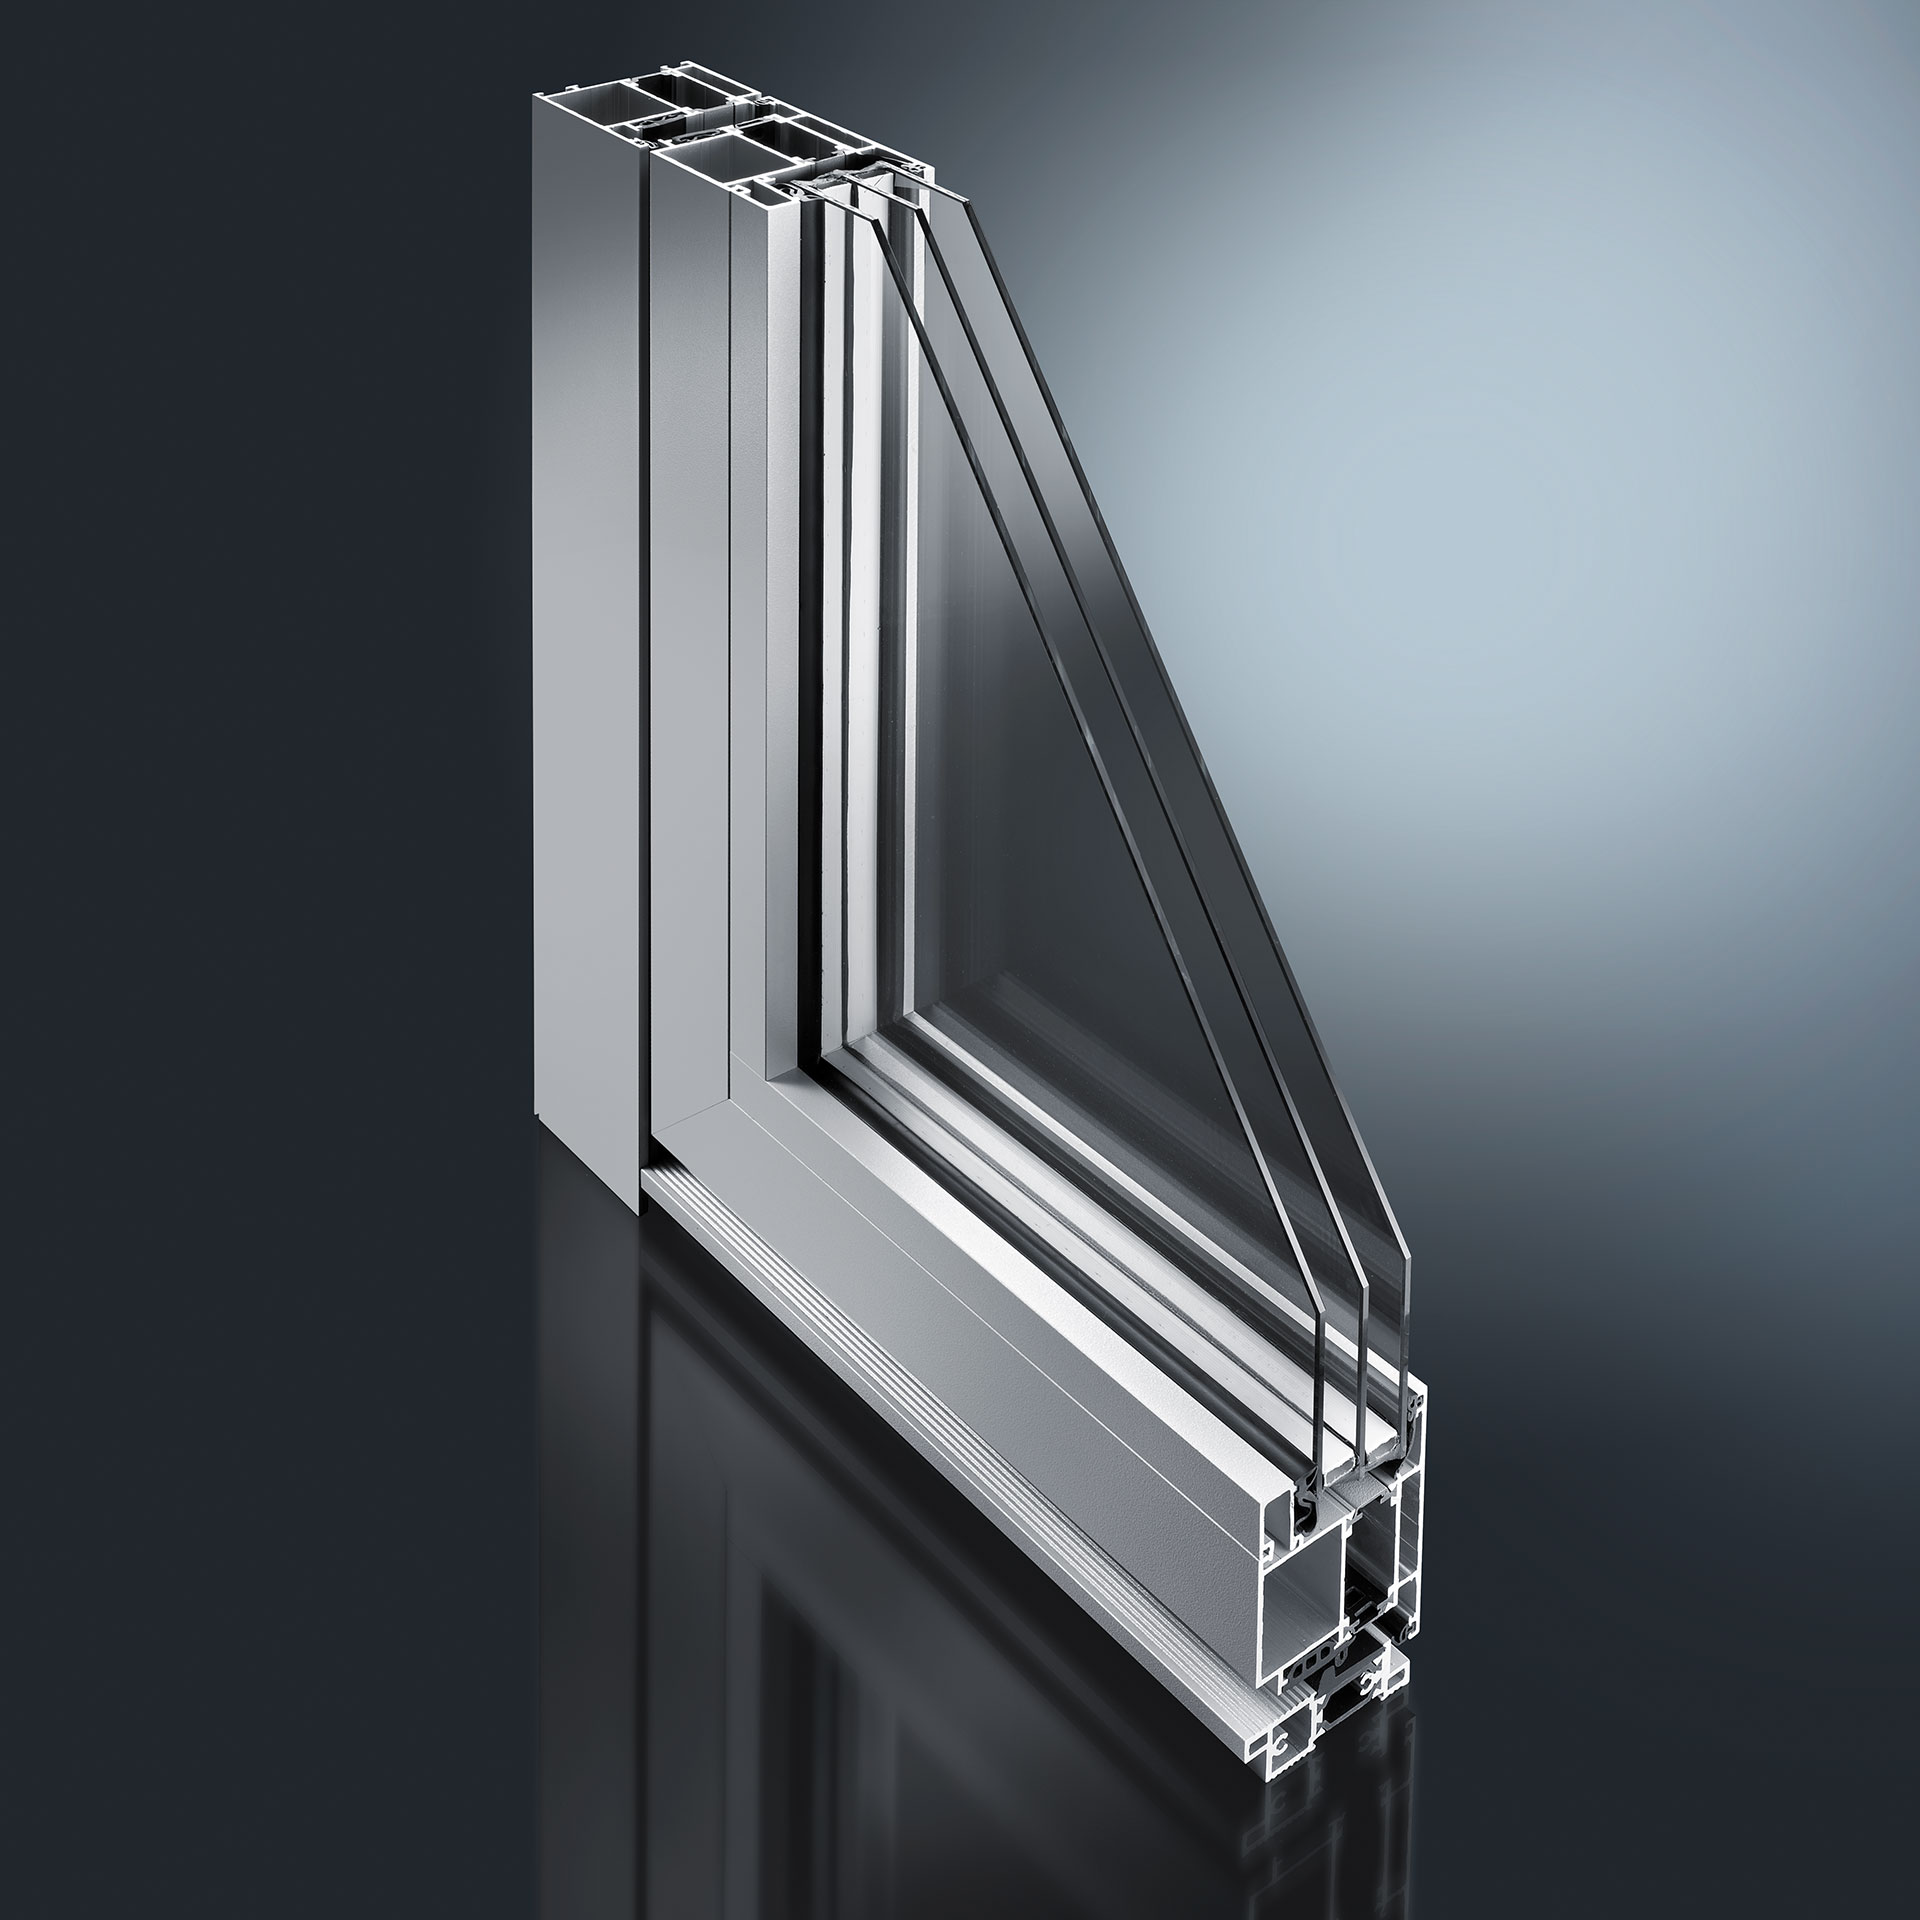 Profilsysteme für Haustüren und Türen - wir bieten sowohl Aluminium-Vorsatzschalen für Holztüren als auch moderne Standard-Modelle aus Aluminium sowie Profilsystem für Trenn- und Wandelemente, auch im Innenbereich.